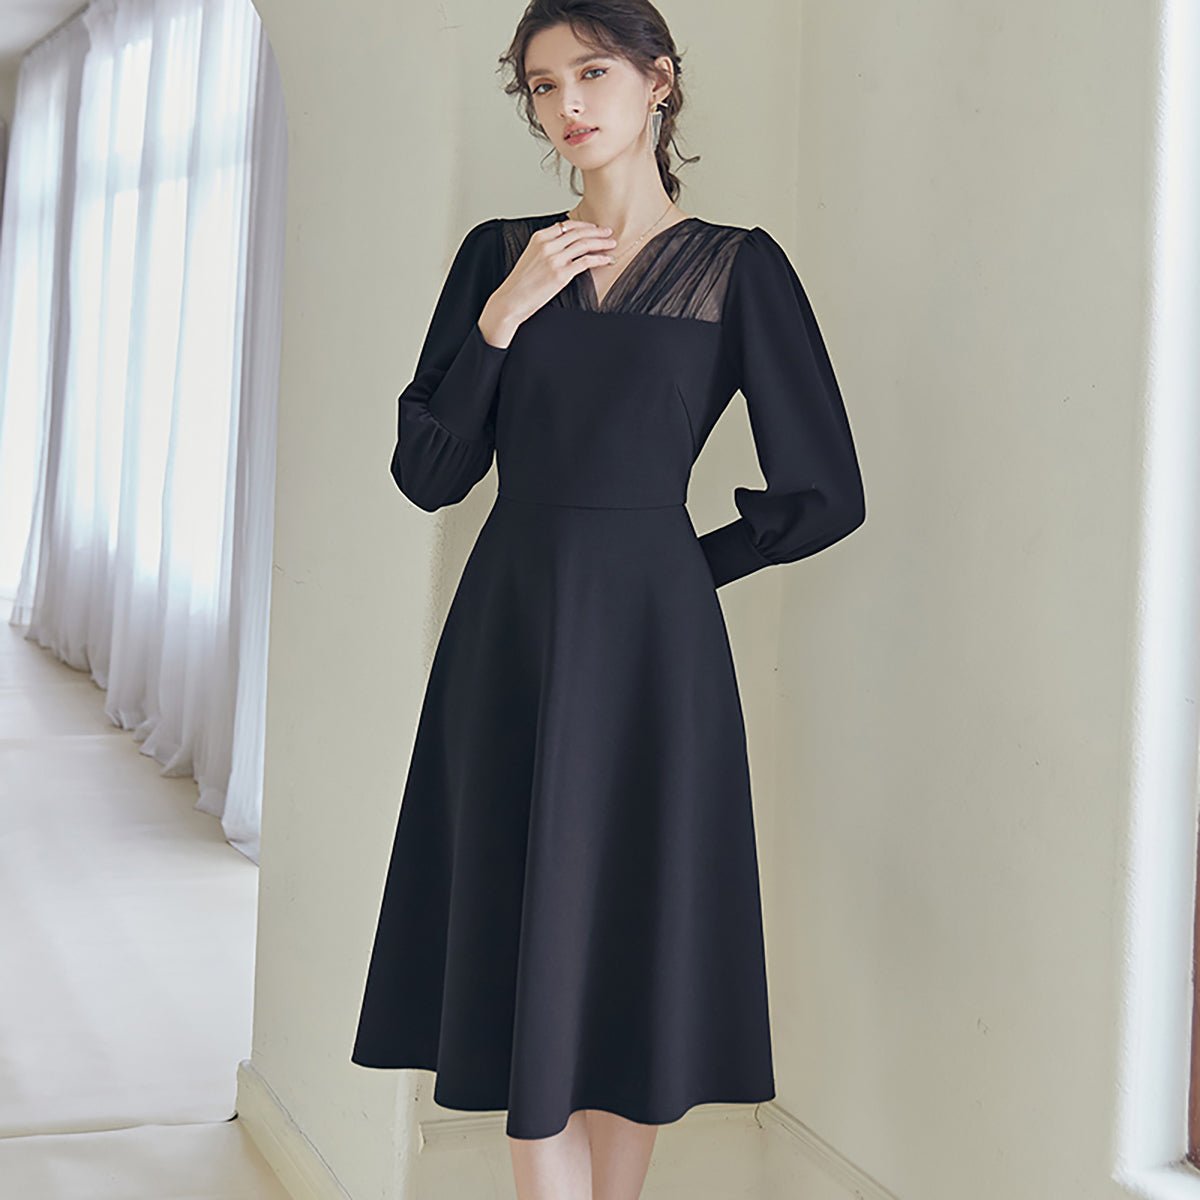 Mesh Detail Full-Sleeved Black Dress